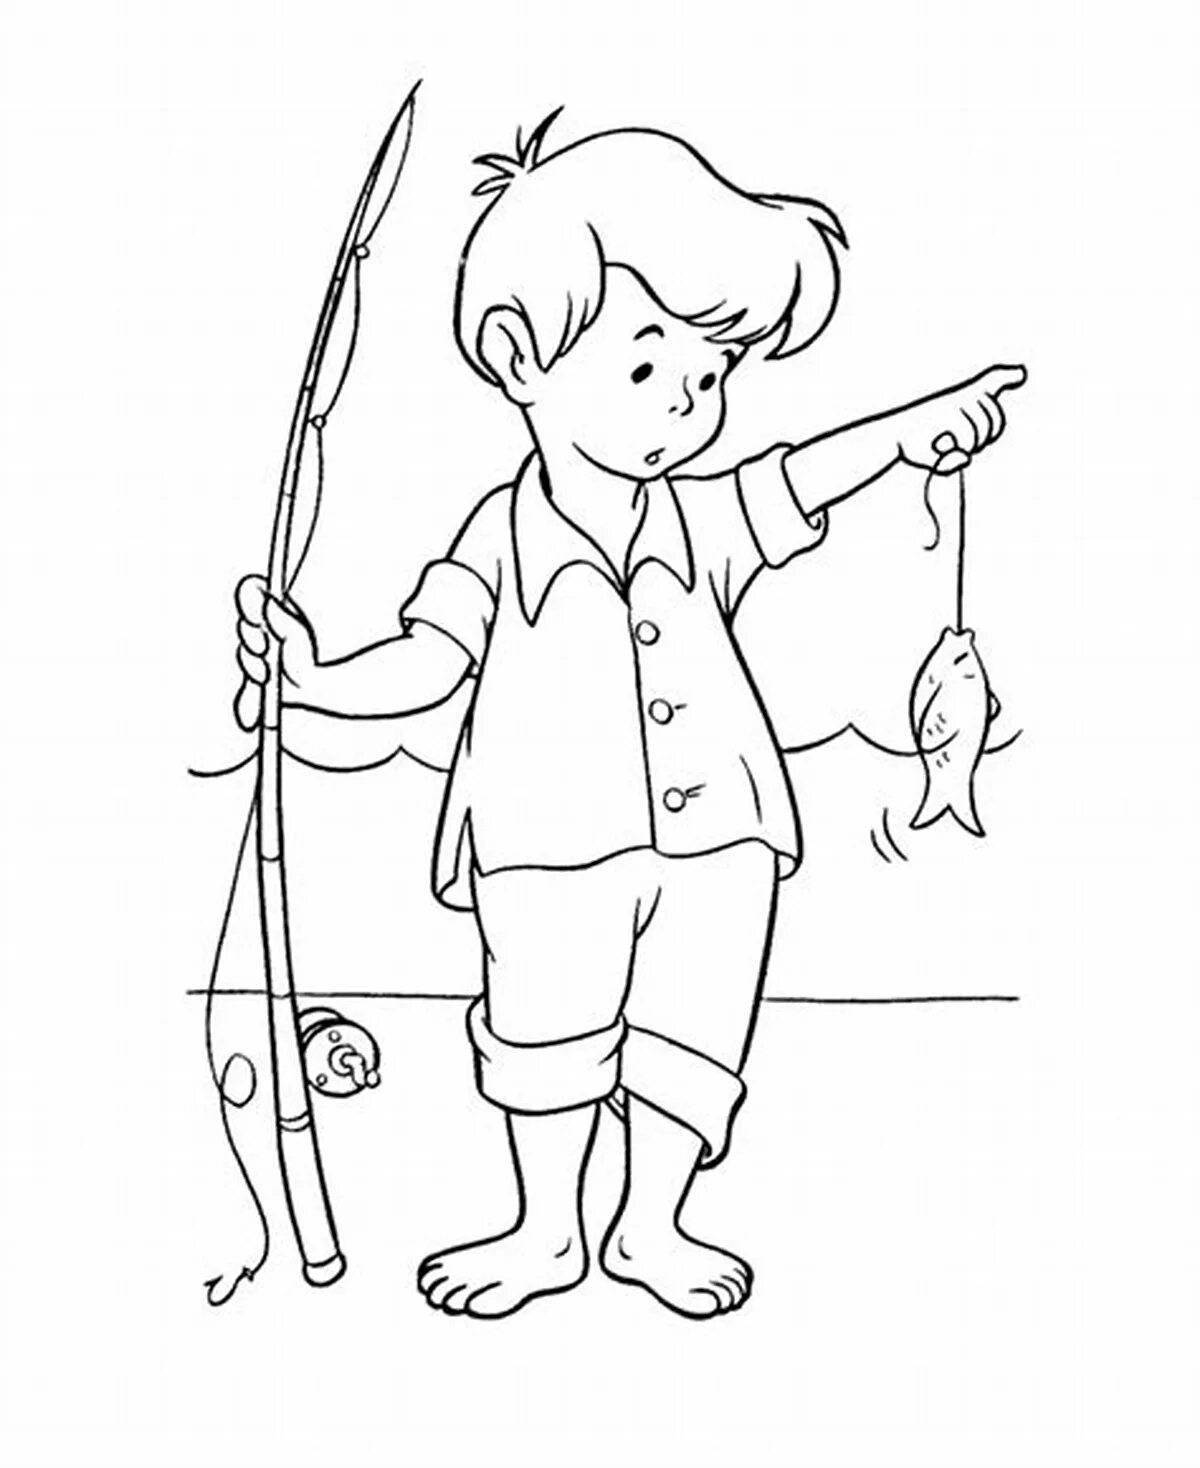 Children's fishing rod #13